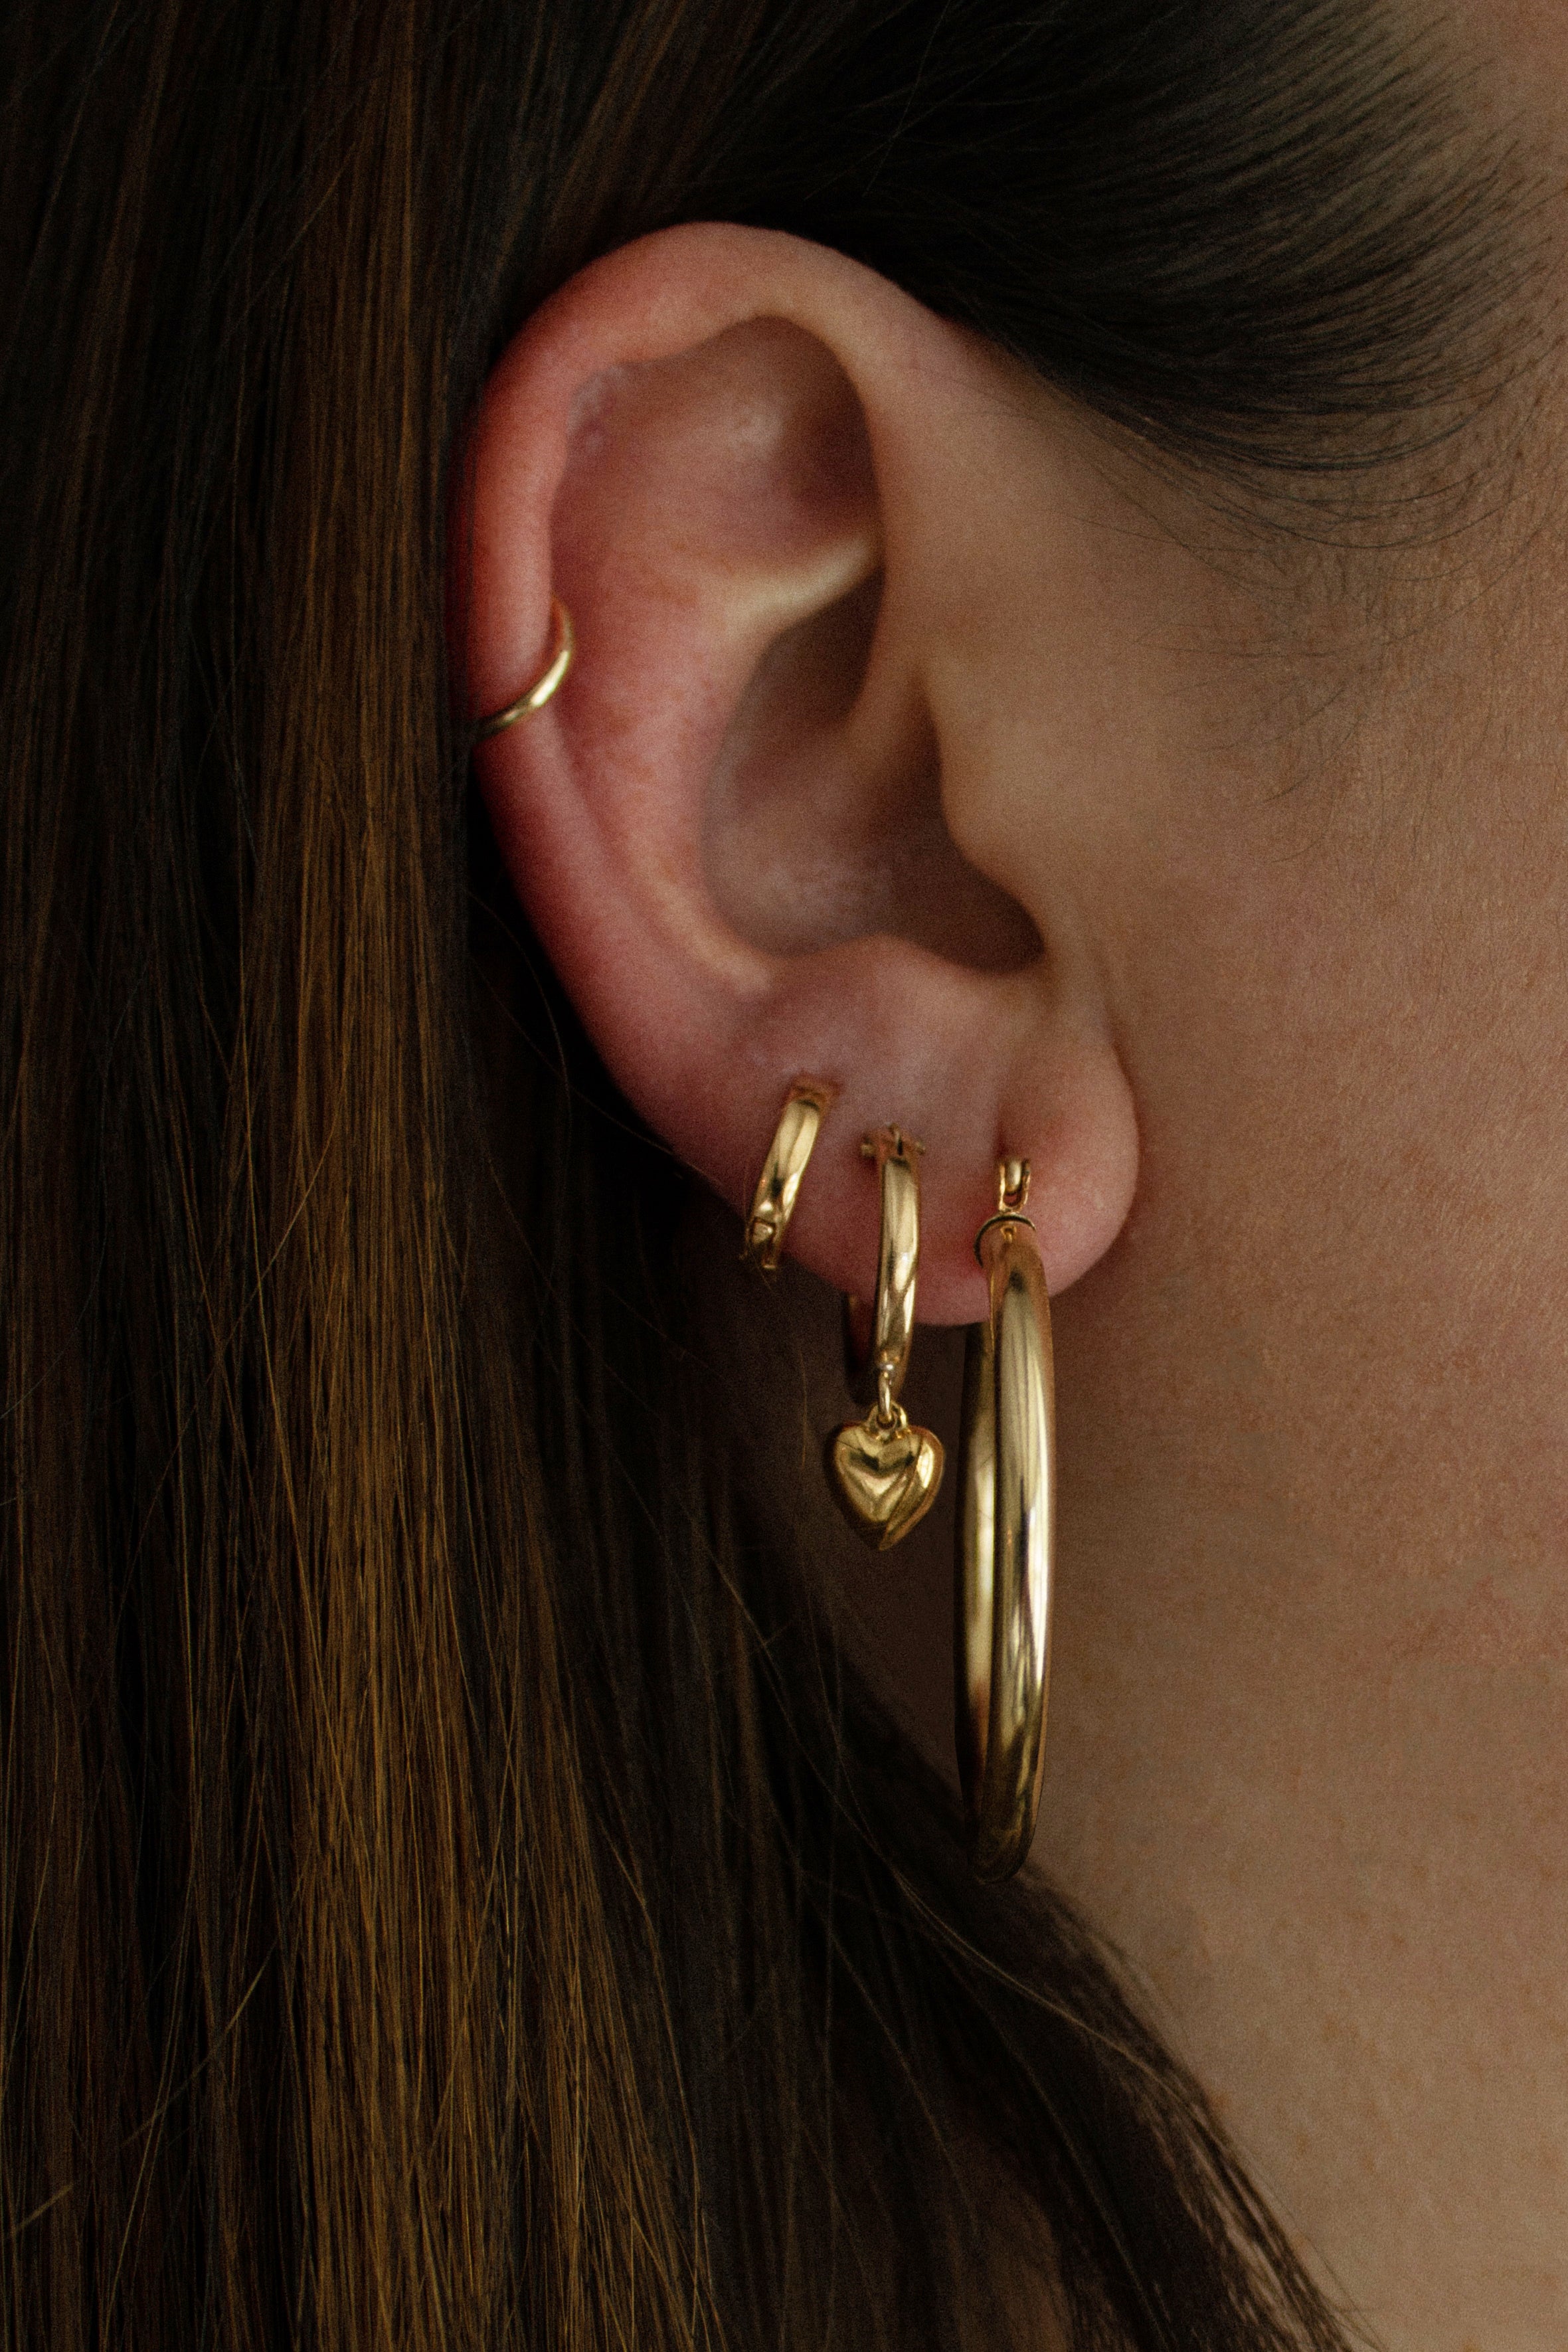 Brooke earrings